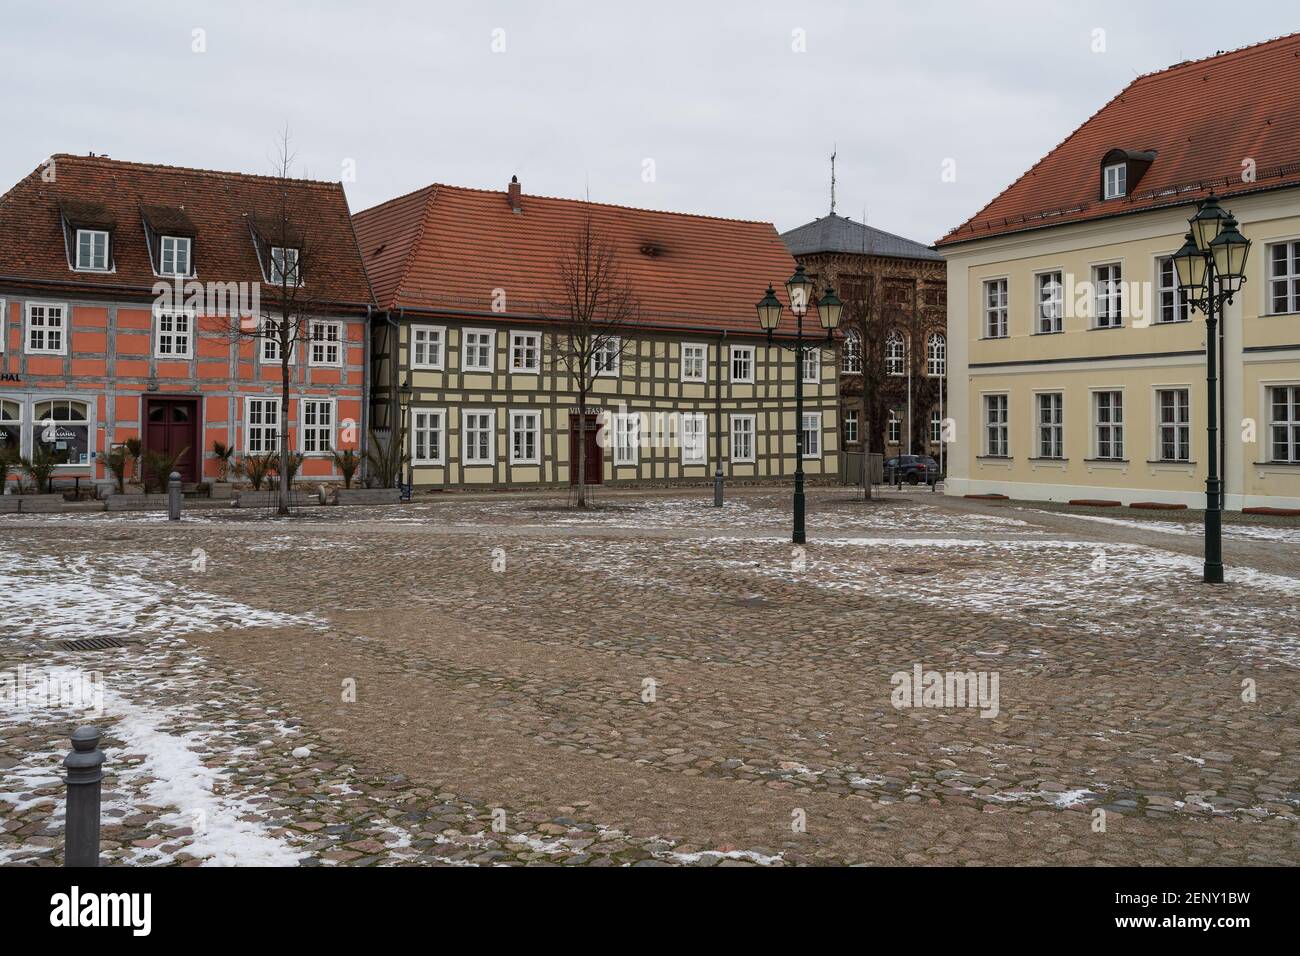 Angermuende, Germania. Piazza del mercato nel centro di un'antica città medievale (fondata nel 1254) nel quartiere di Uckermark, nello stato del Brandeburgo. Foto Stock